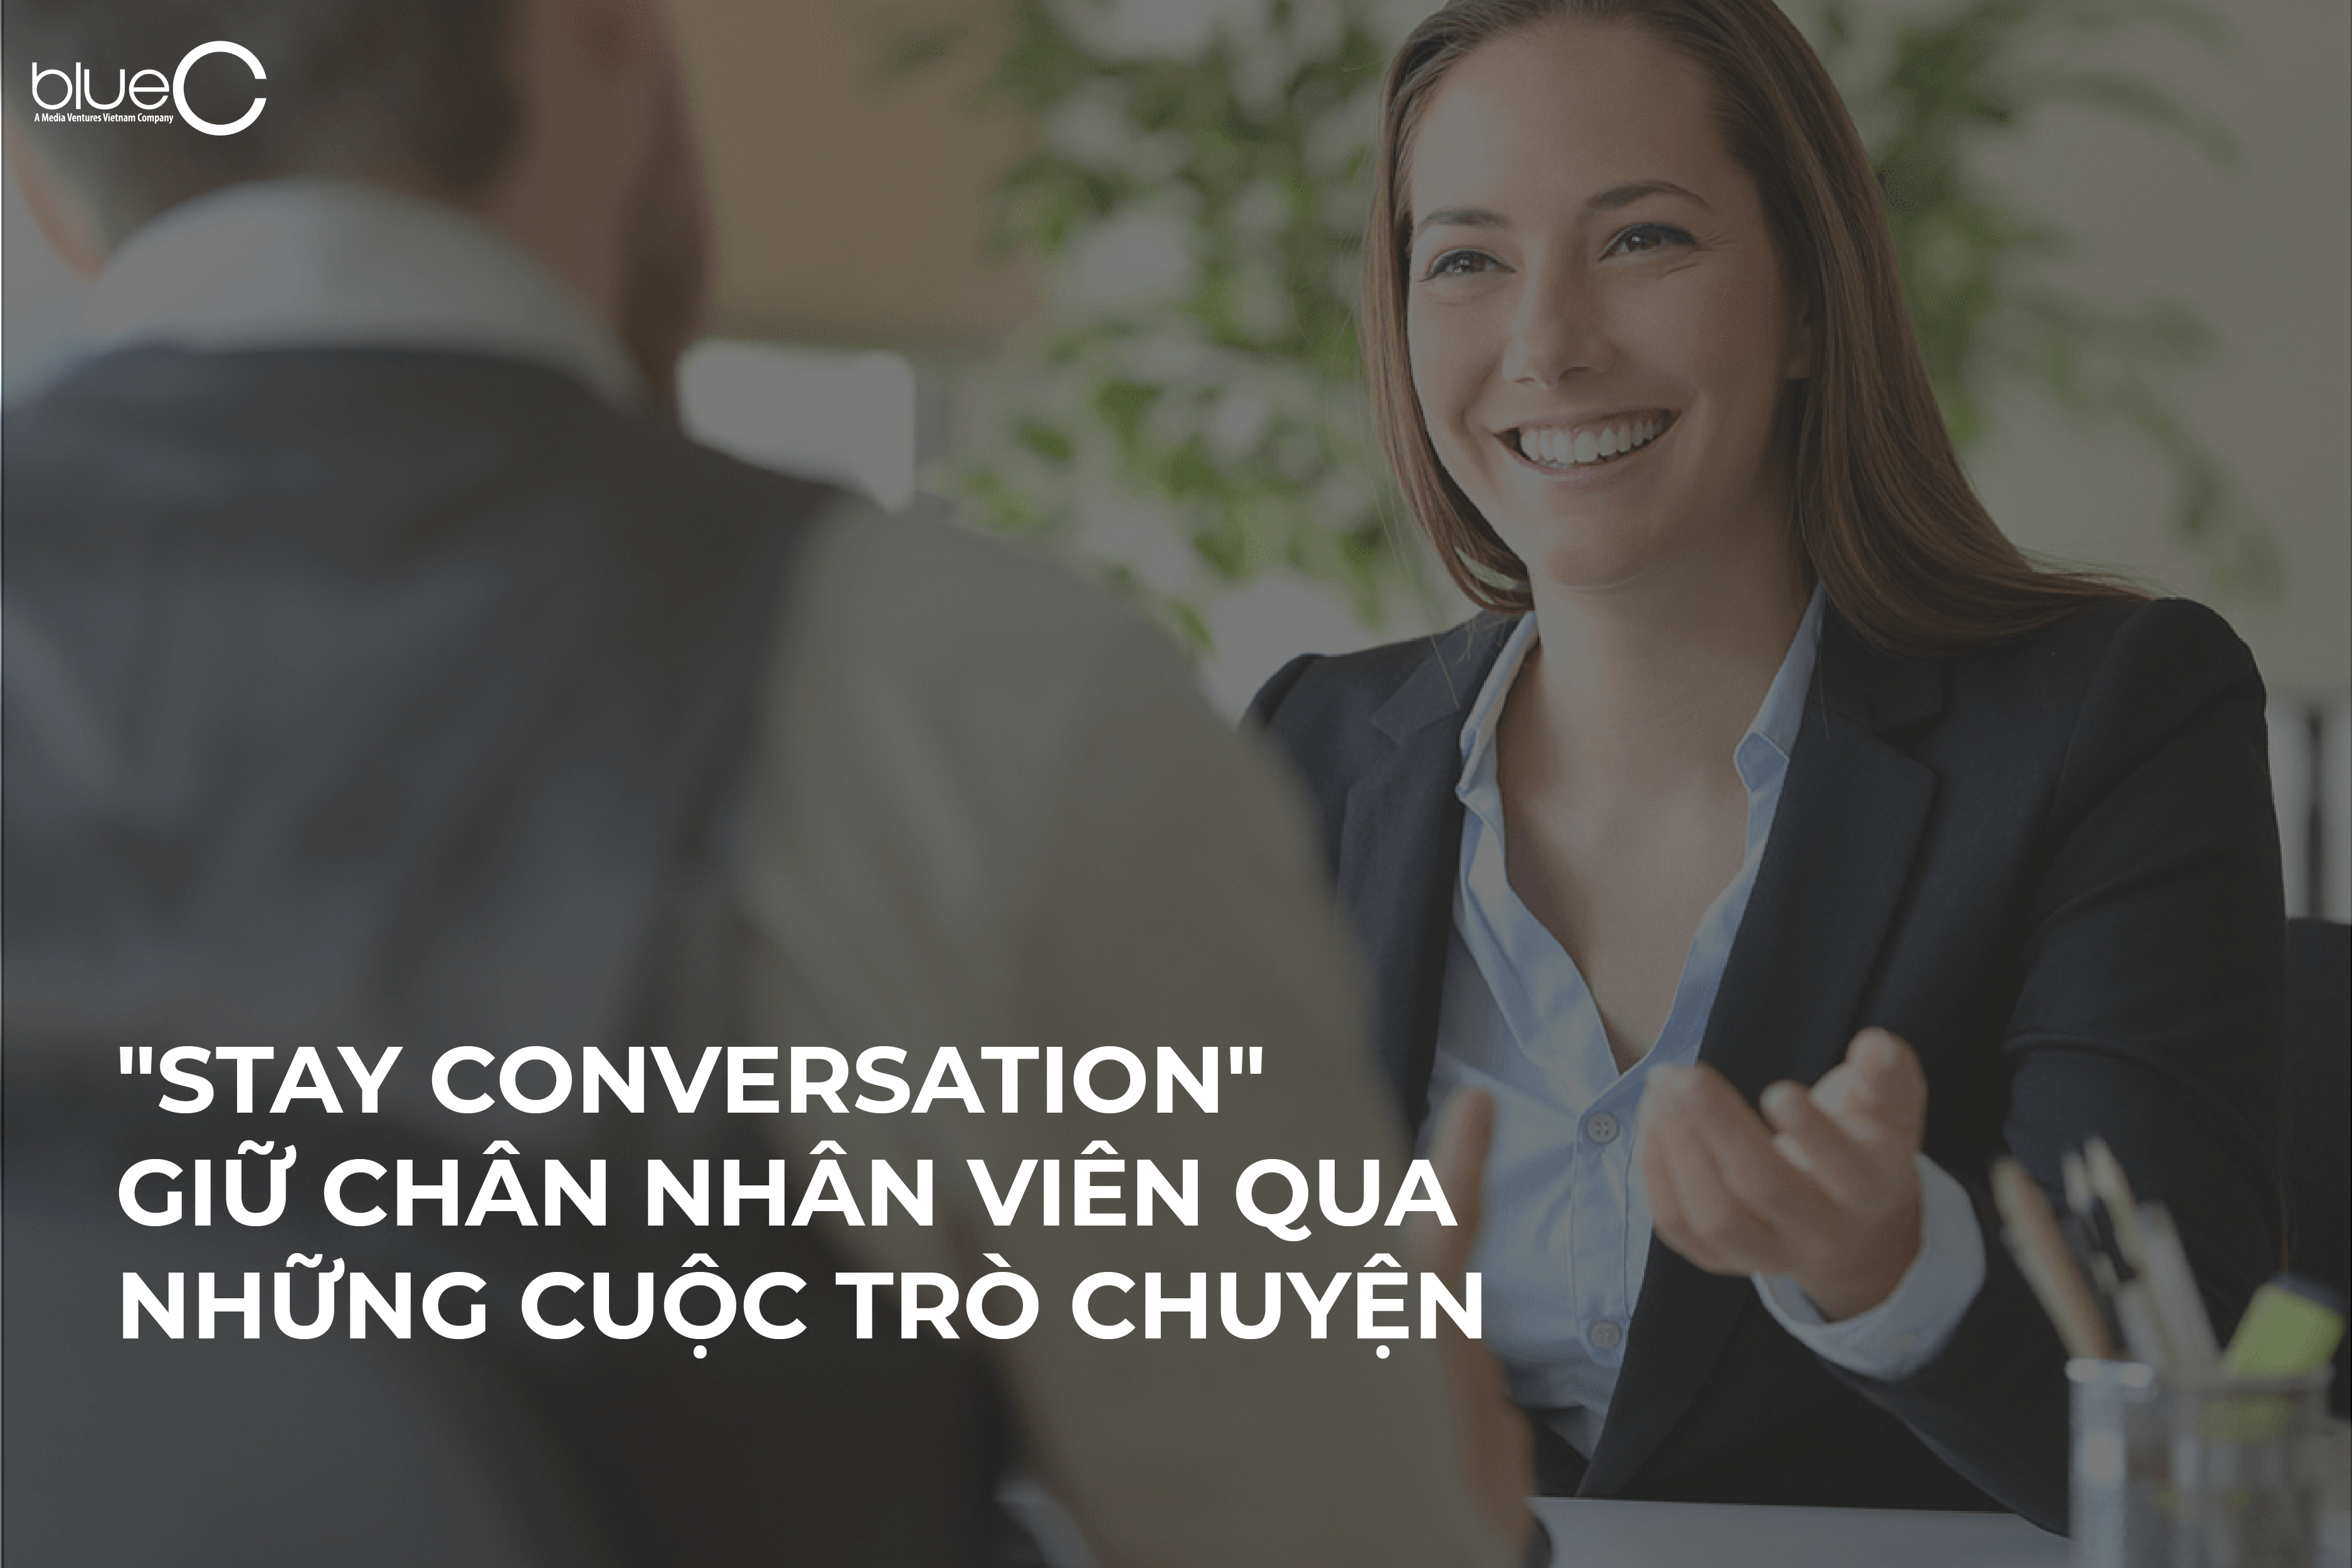 “Stay conversation”: Giữ chân nhân viên qua những cuộc trò chuyện